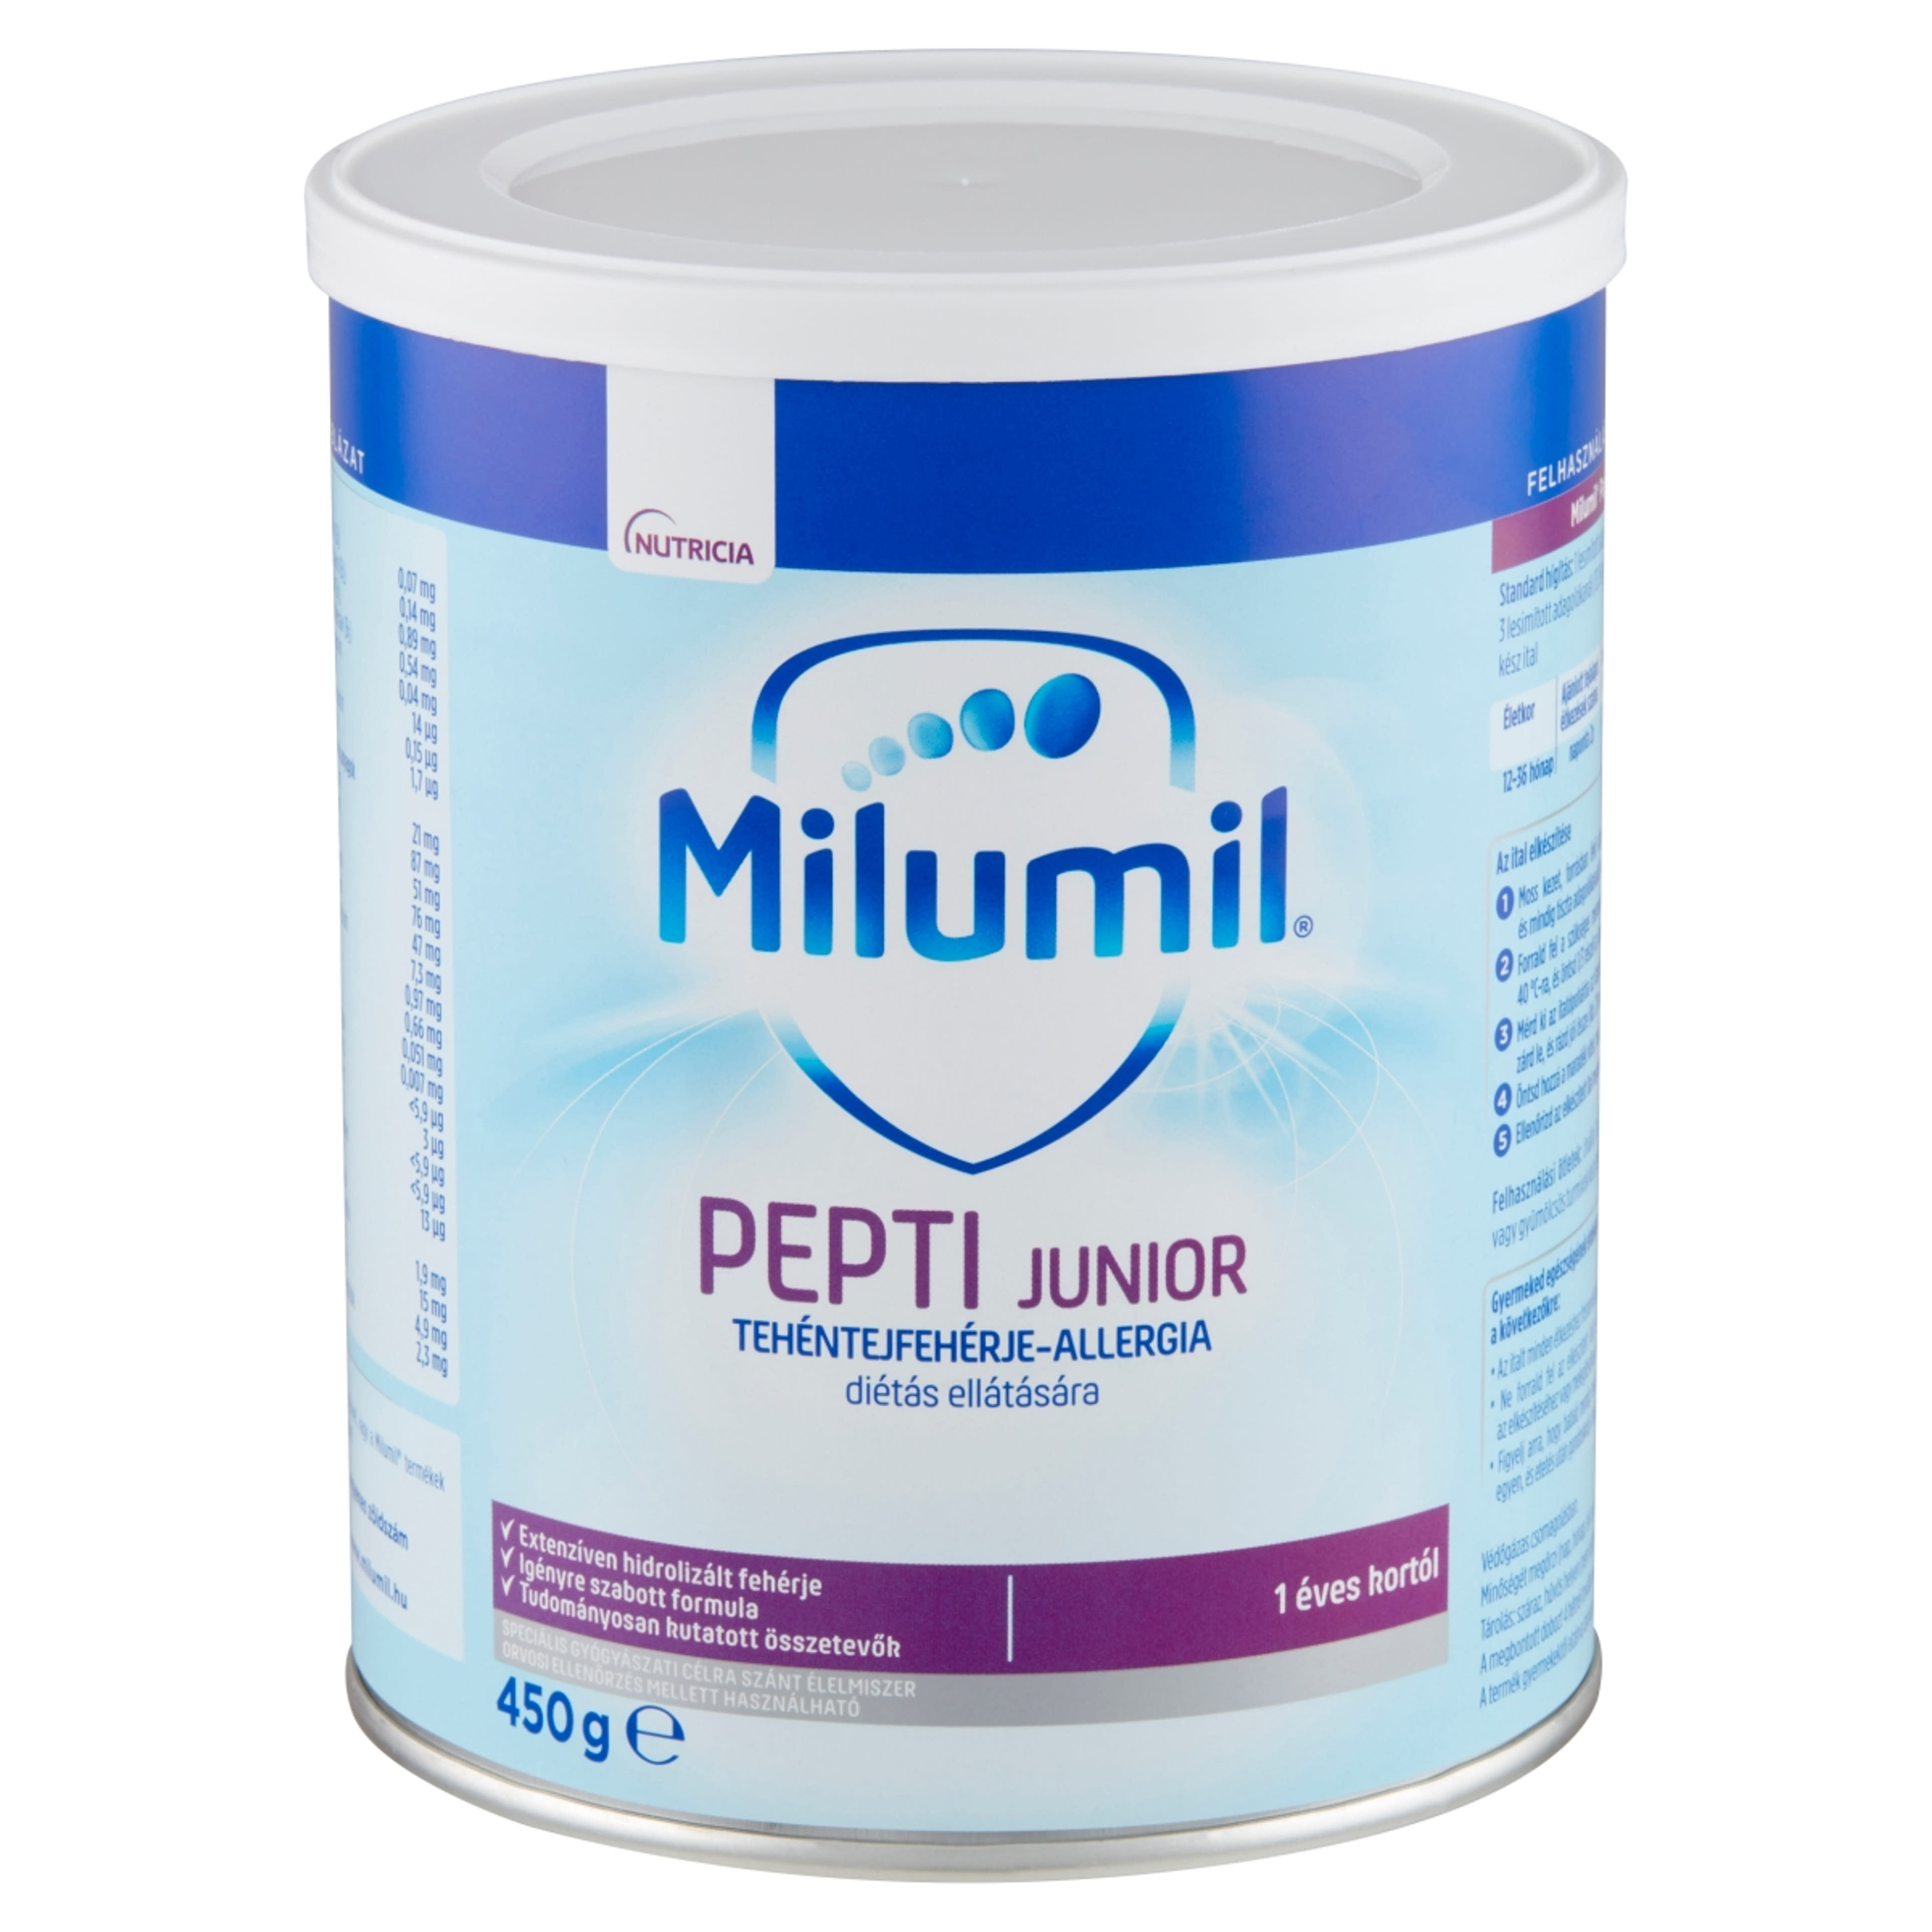 Milumil Pepti Junior speciális gyógyászati célra szánt élelmiszer 1 éves kortól - 450 g-2